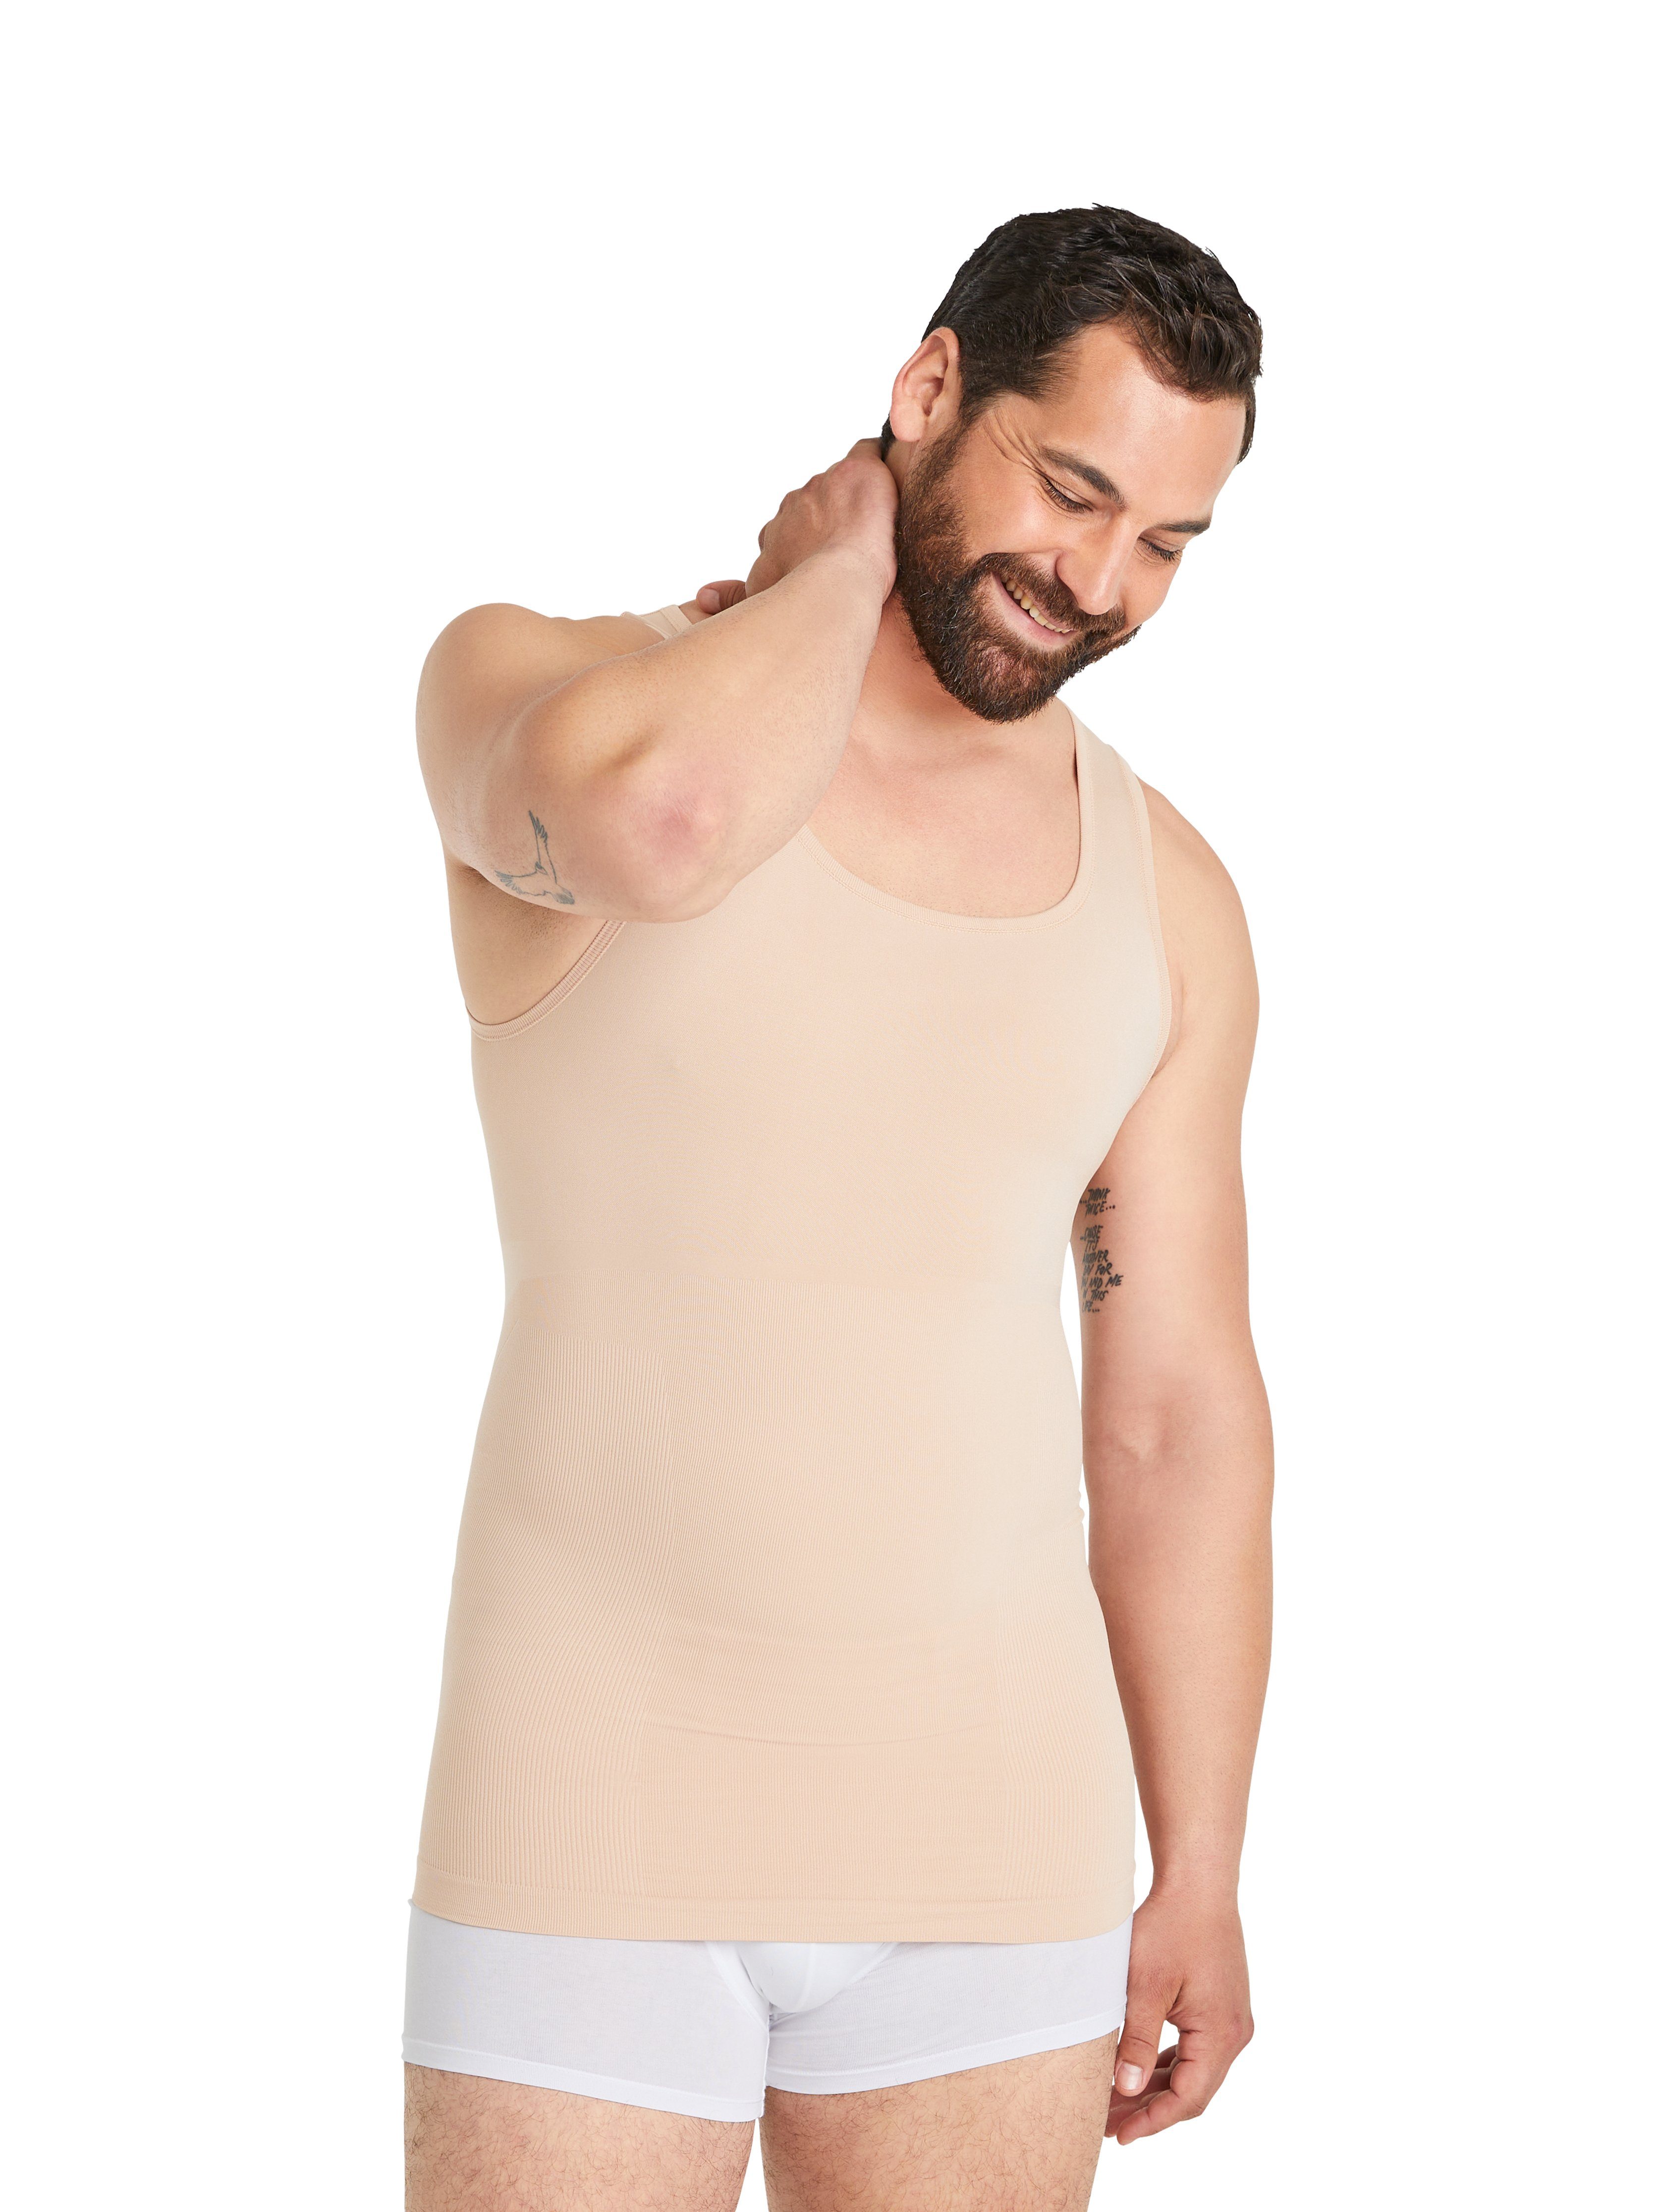 FINN Design Shapinghemd Herren Body-Shaper für Seamless Männer Nähte Starker Kompressions-Unterhemd Light-Beige ohne